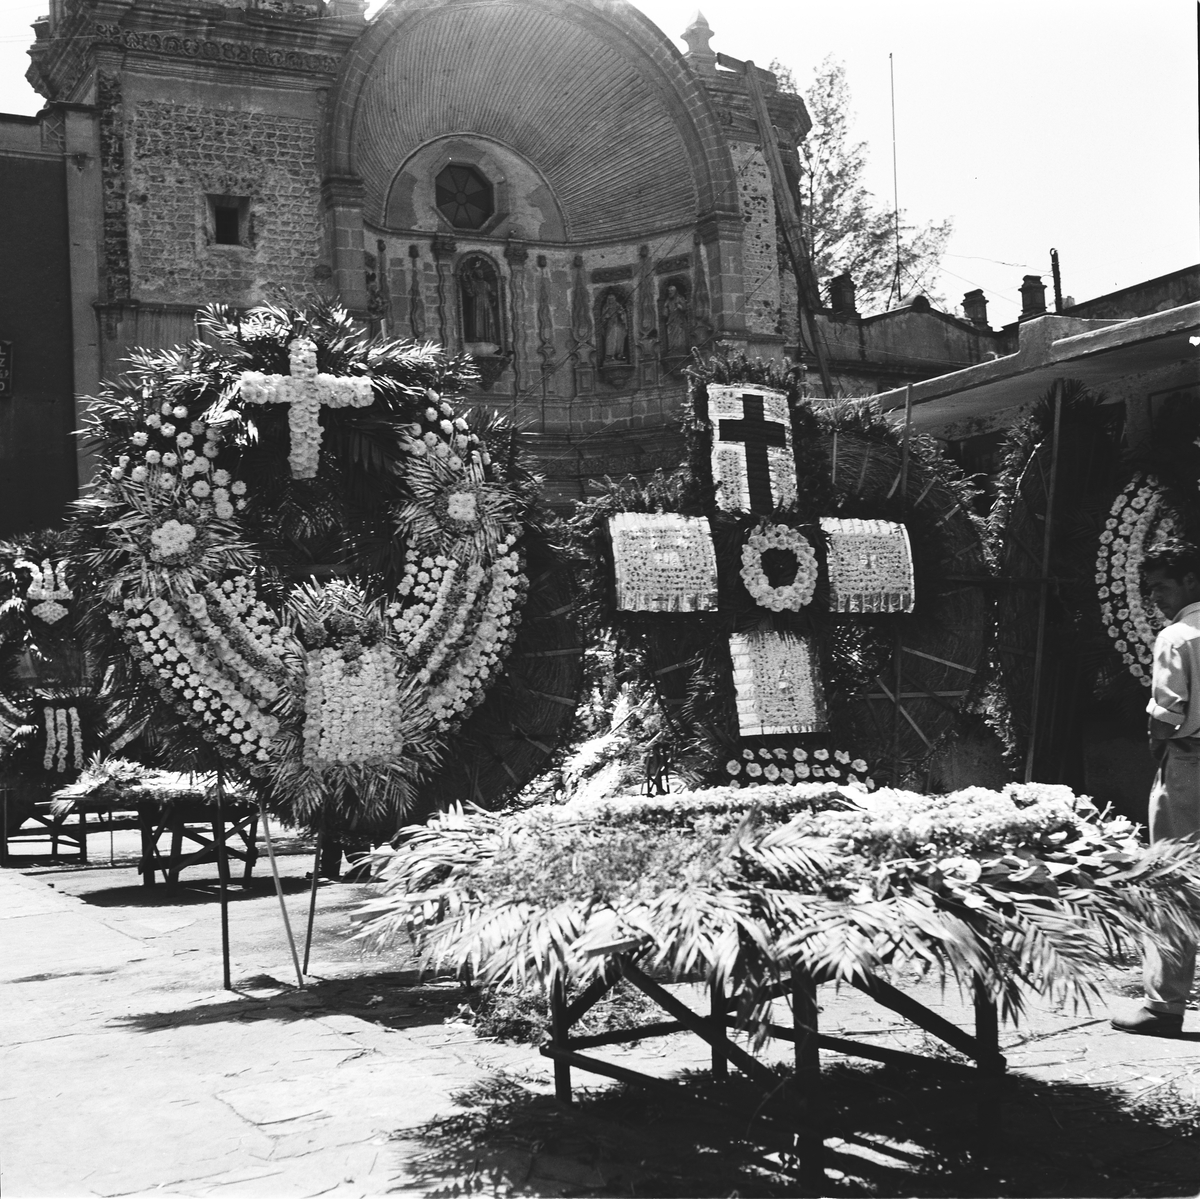 Store blomsteroppsatser utenfor kirke. Mexico 1955.